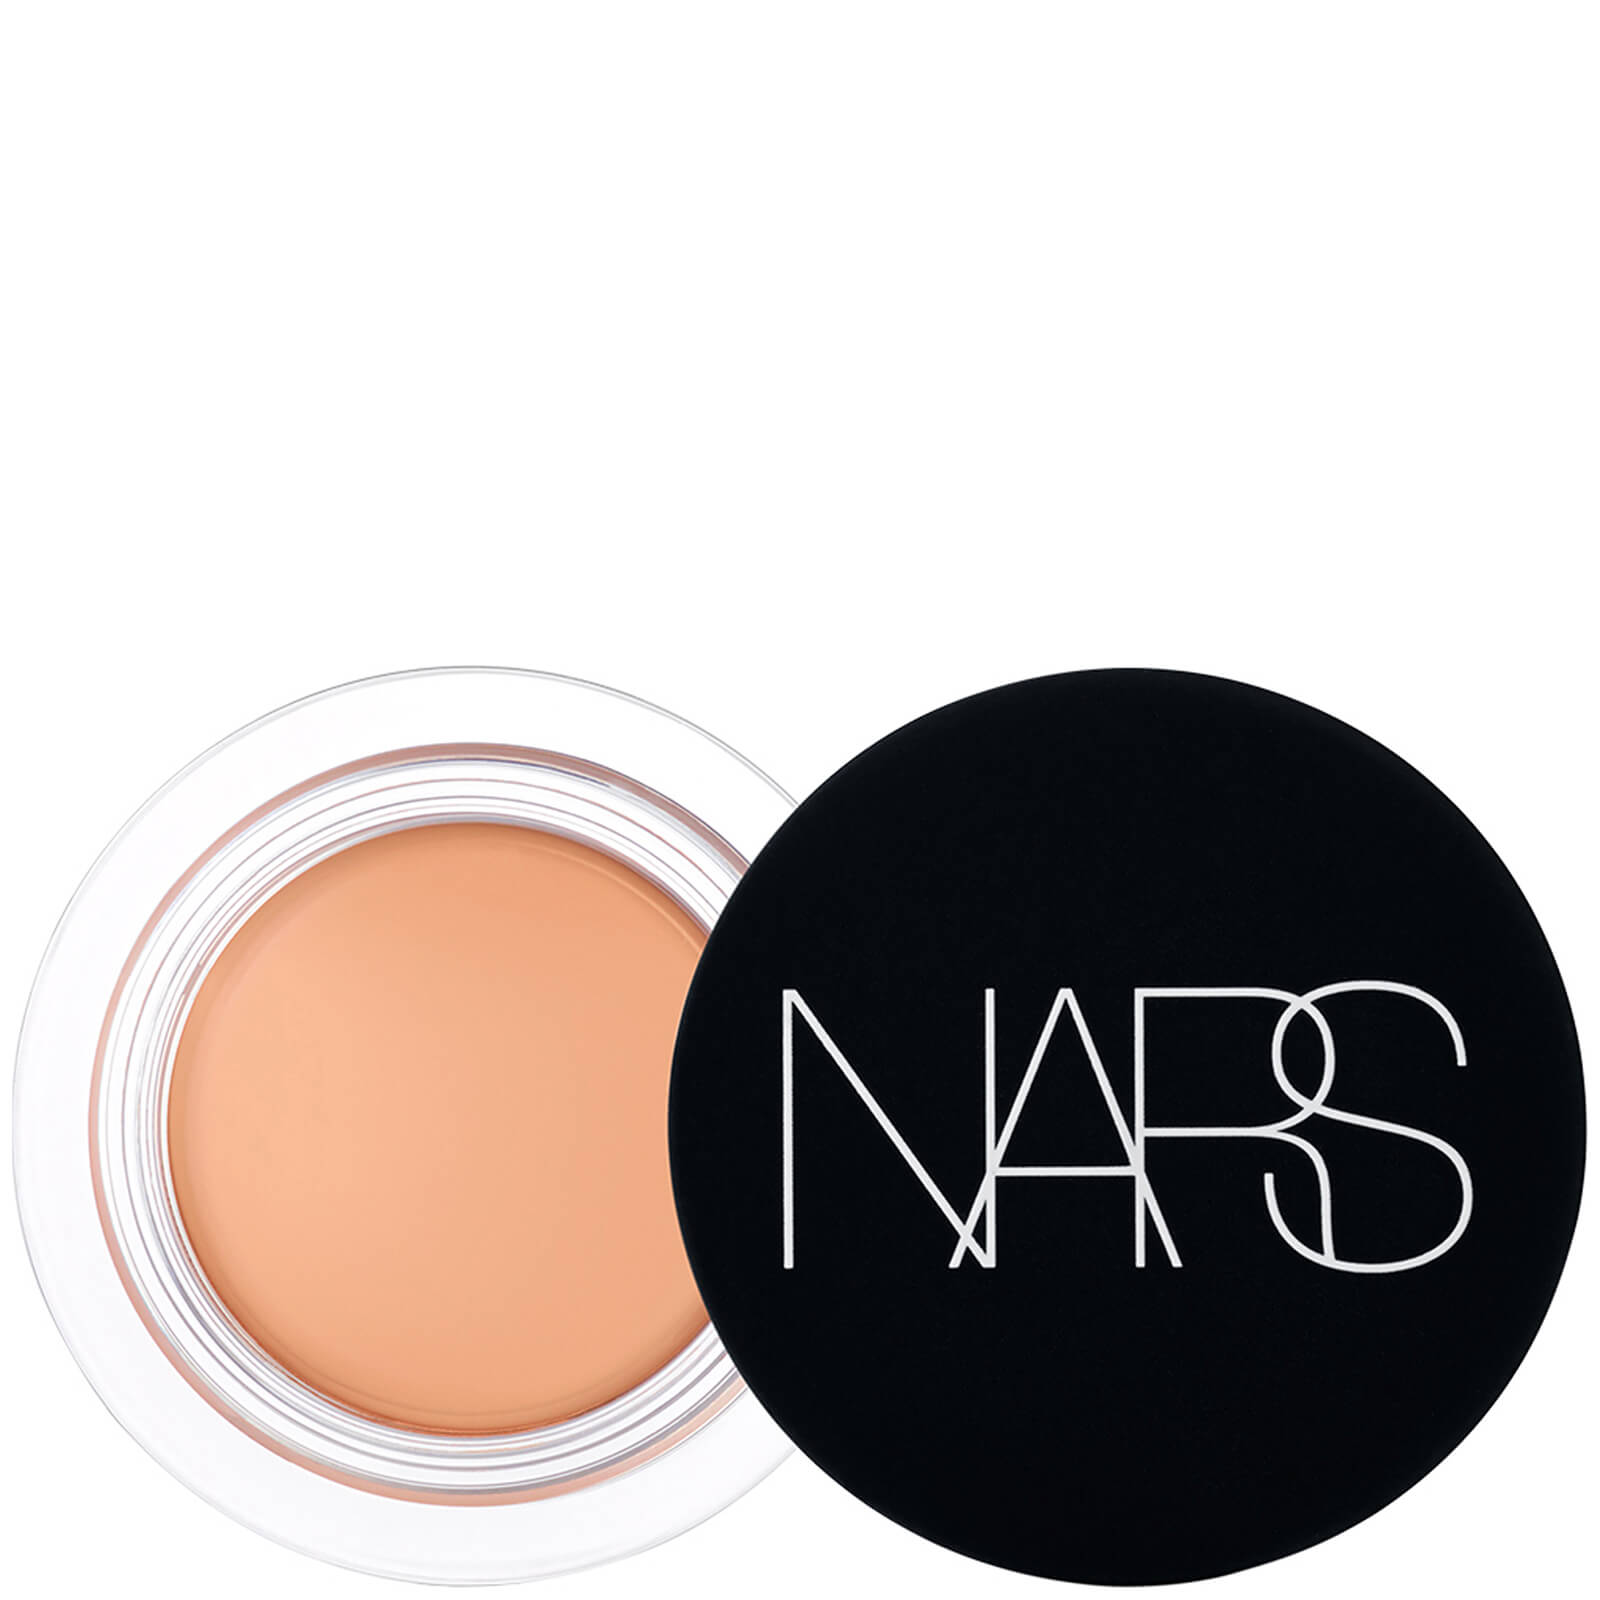 NARS Soft Matte Complete Concealer 6.2g (Various Shades) - Honey